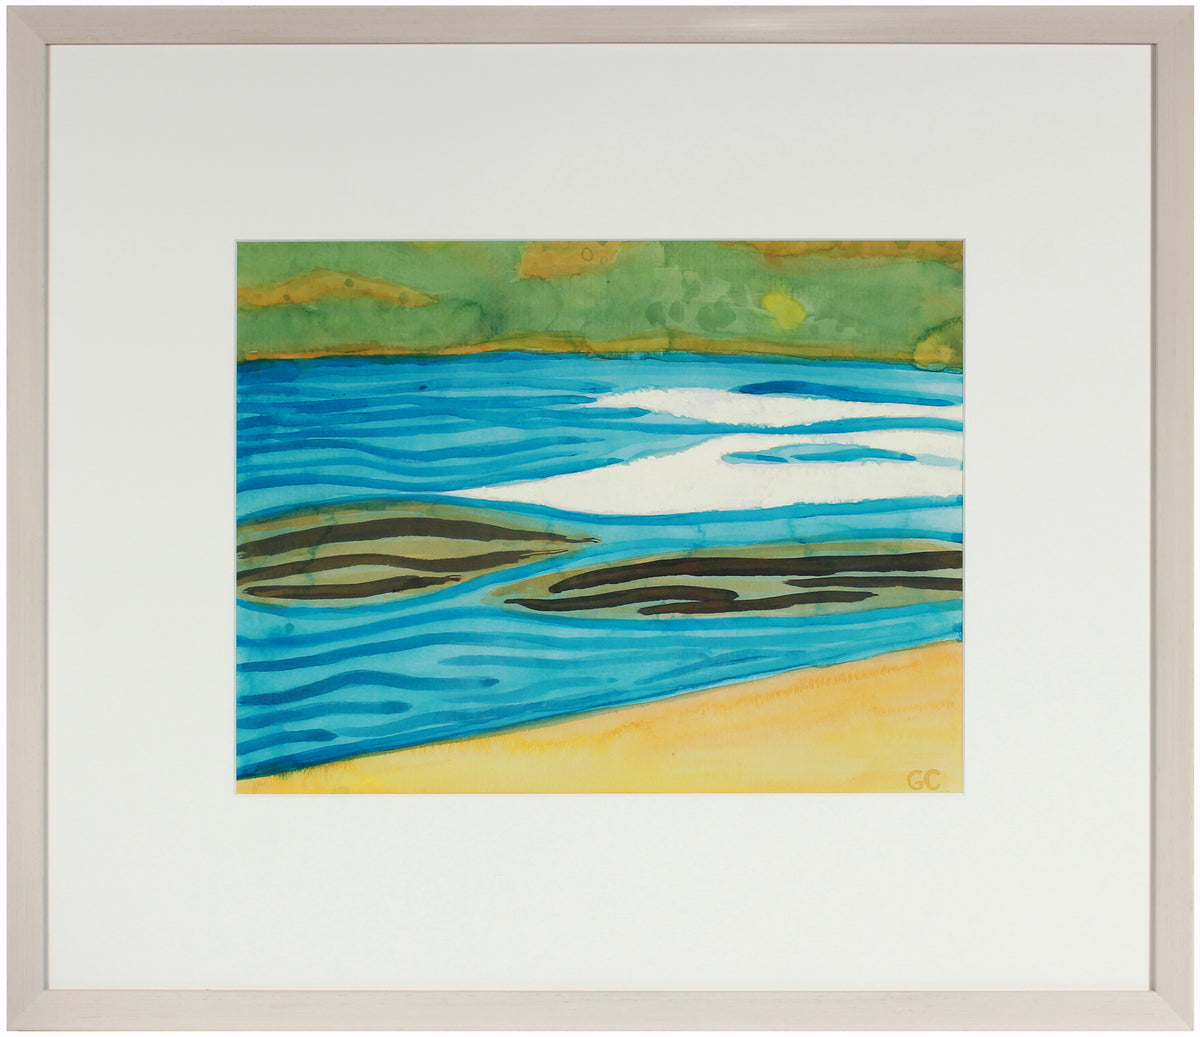 &lt;i&gt;Mendocino Lake III&lt;/i&gt; &lt;br&gt;2016 Watercolor, Graphite, Oil &amp; Ink &lt;br&gt;&lt;br&gt;#89693